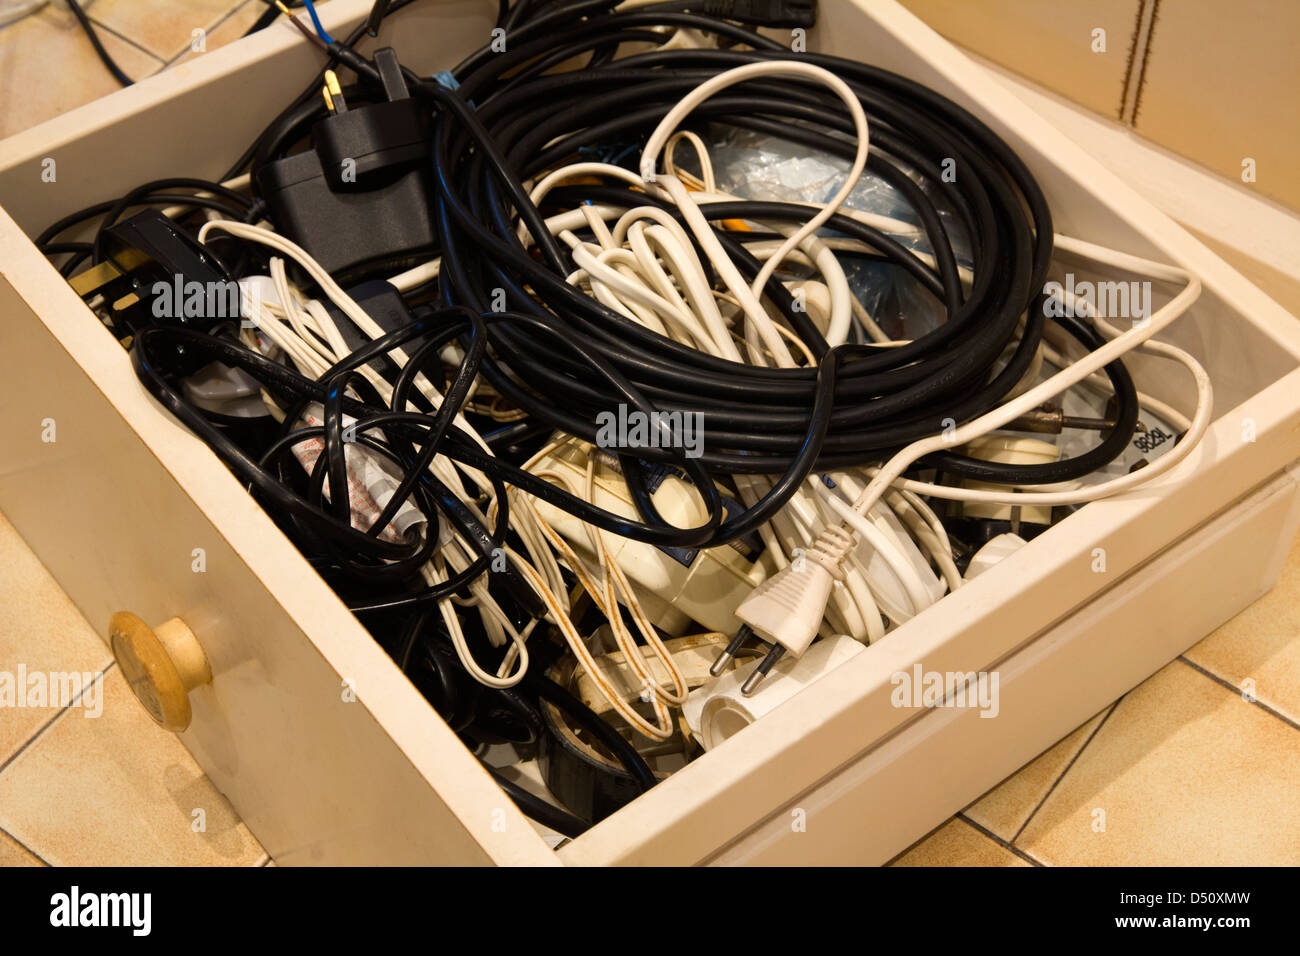 Un viejo cajón con cables eléctricos, cables para diversos usos. Foto de stock